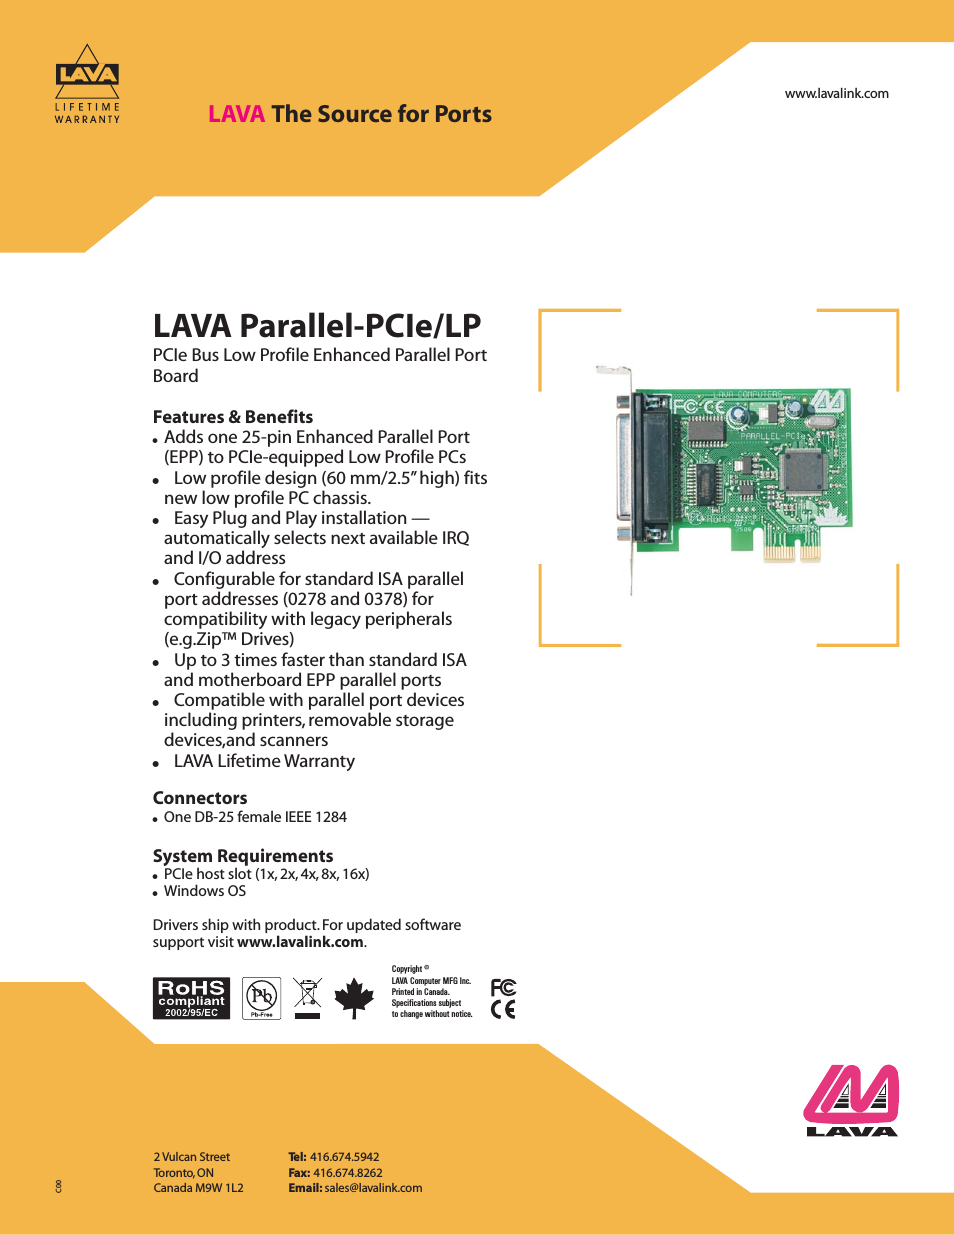 Parallel-PCIe/LP